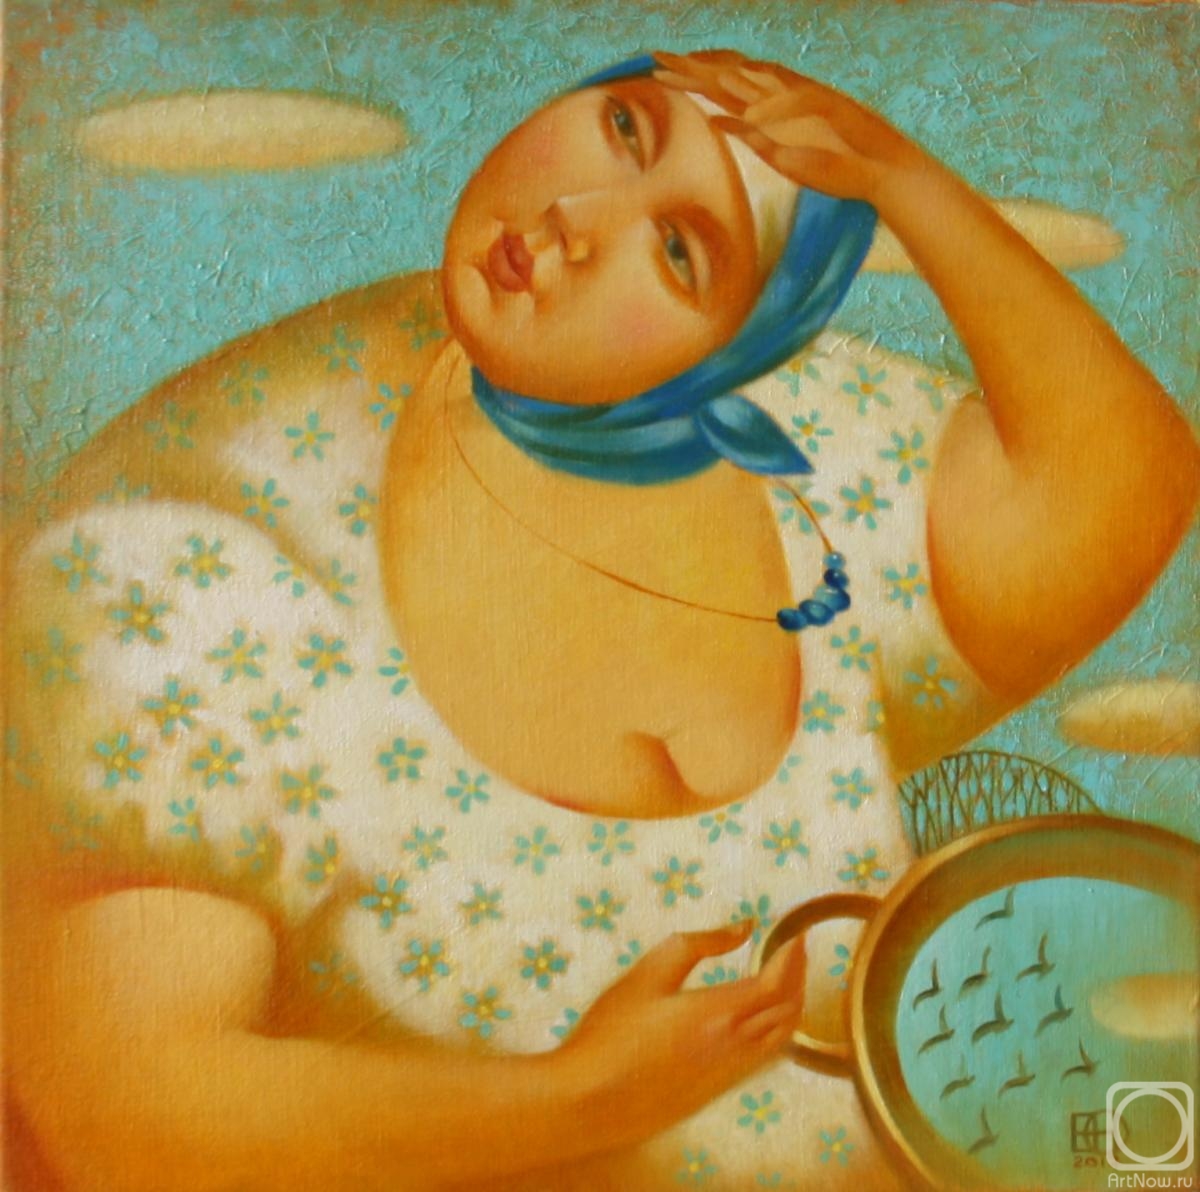 Egorova Nadezhda. Untitled